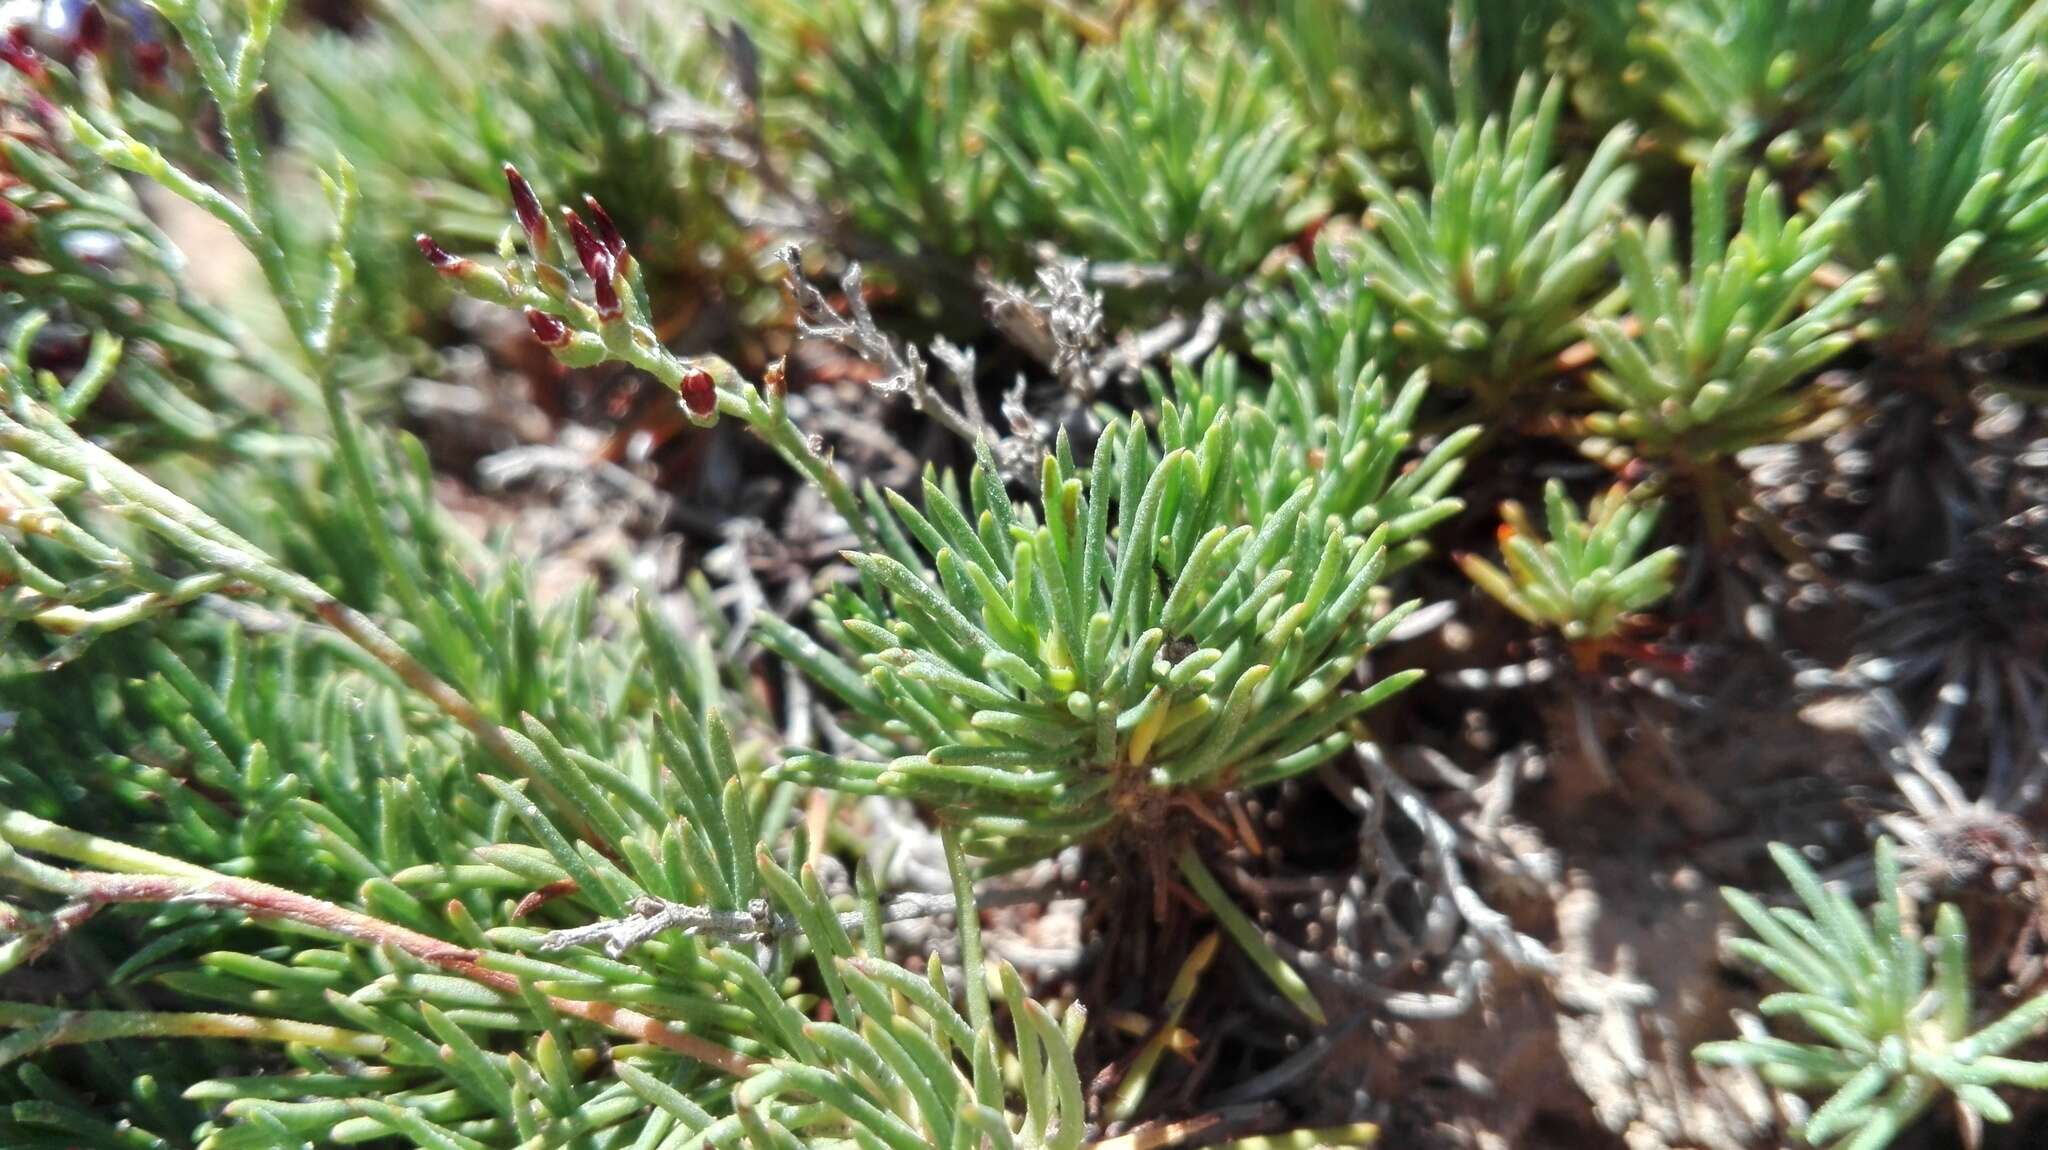 Image de Limonium linifolium (L. fil.) Kuntze